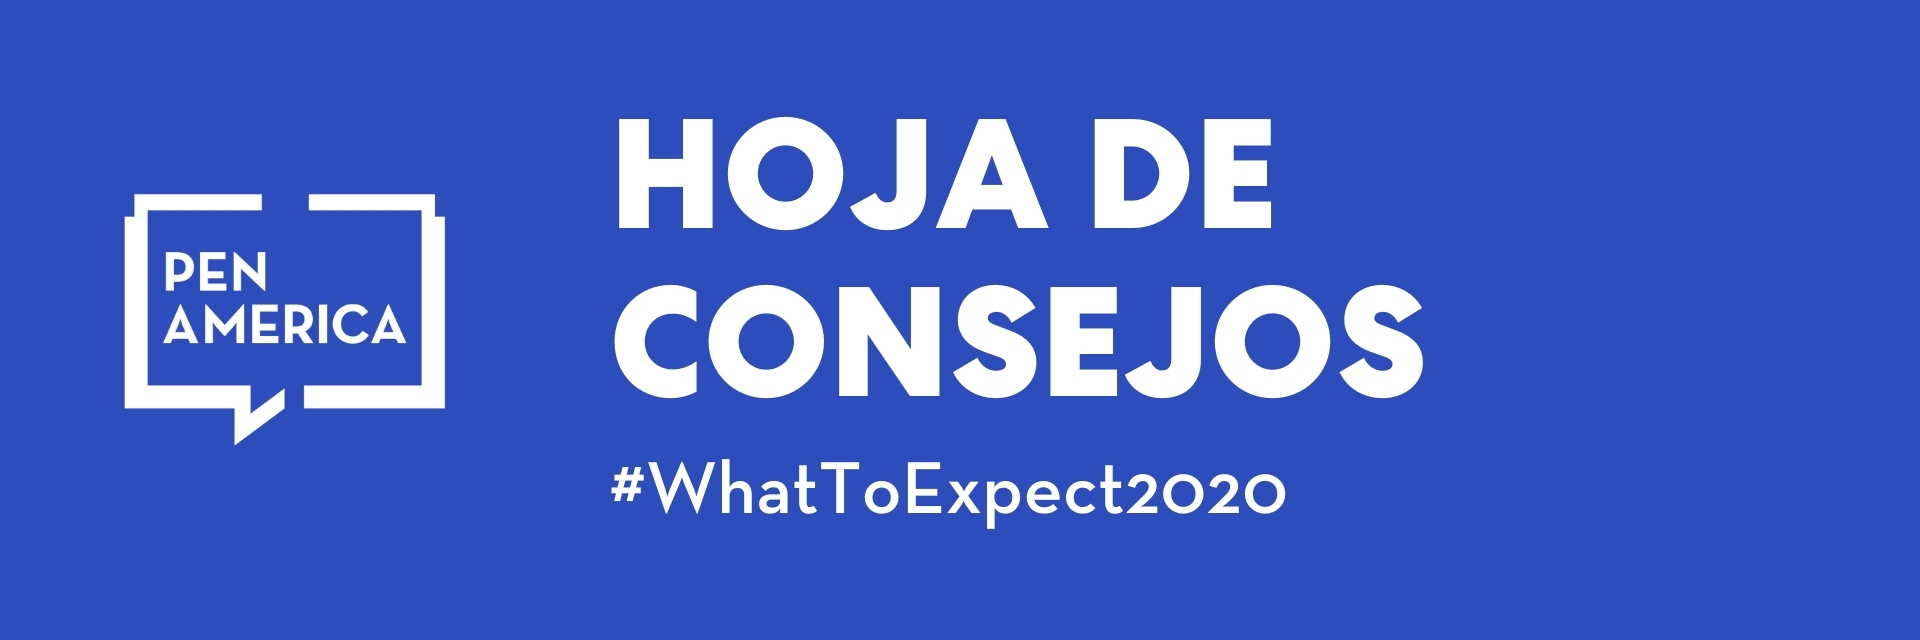 Banner de la hoja de consejos: logotipo, “Hoja de consejos” y “#WhatToExpect2020” en palabras